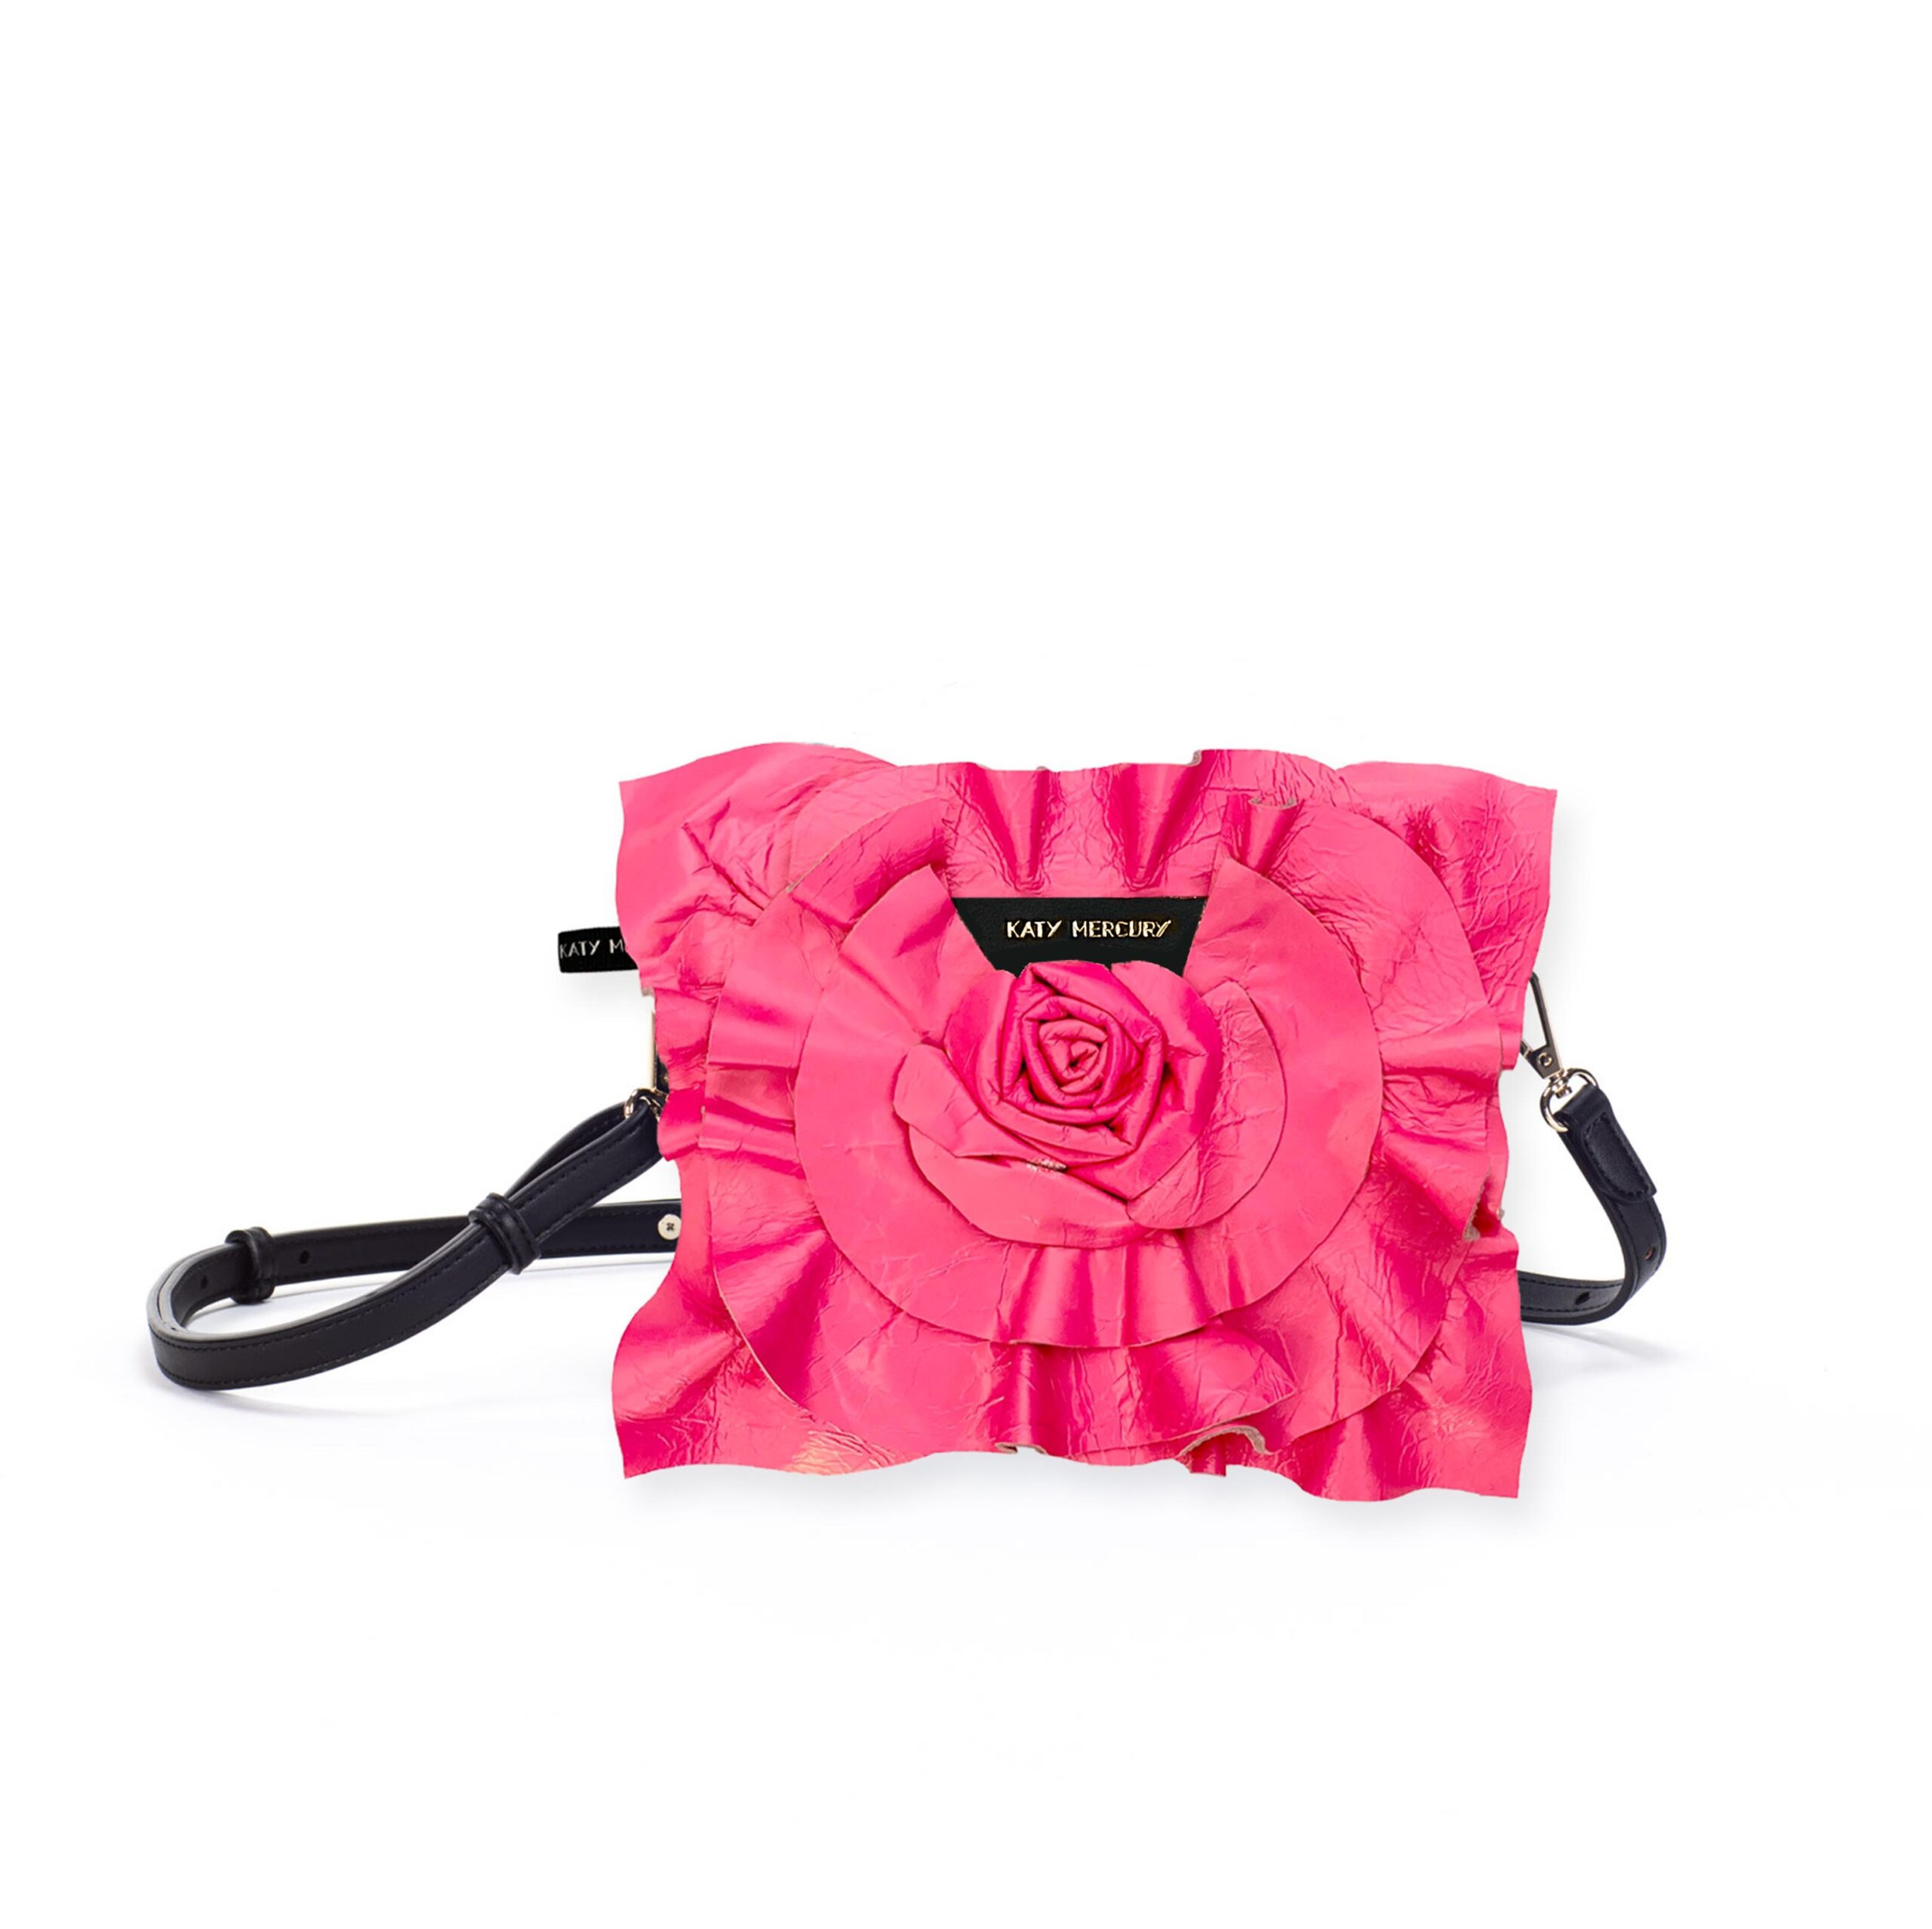 BAG1 mit Neon Pink crackle leather Lederblume StyleCover handgefaltete Lederrose Wechselklappe für KatyMercury Wandelbare Taschen